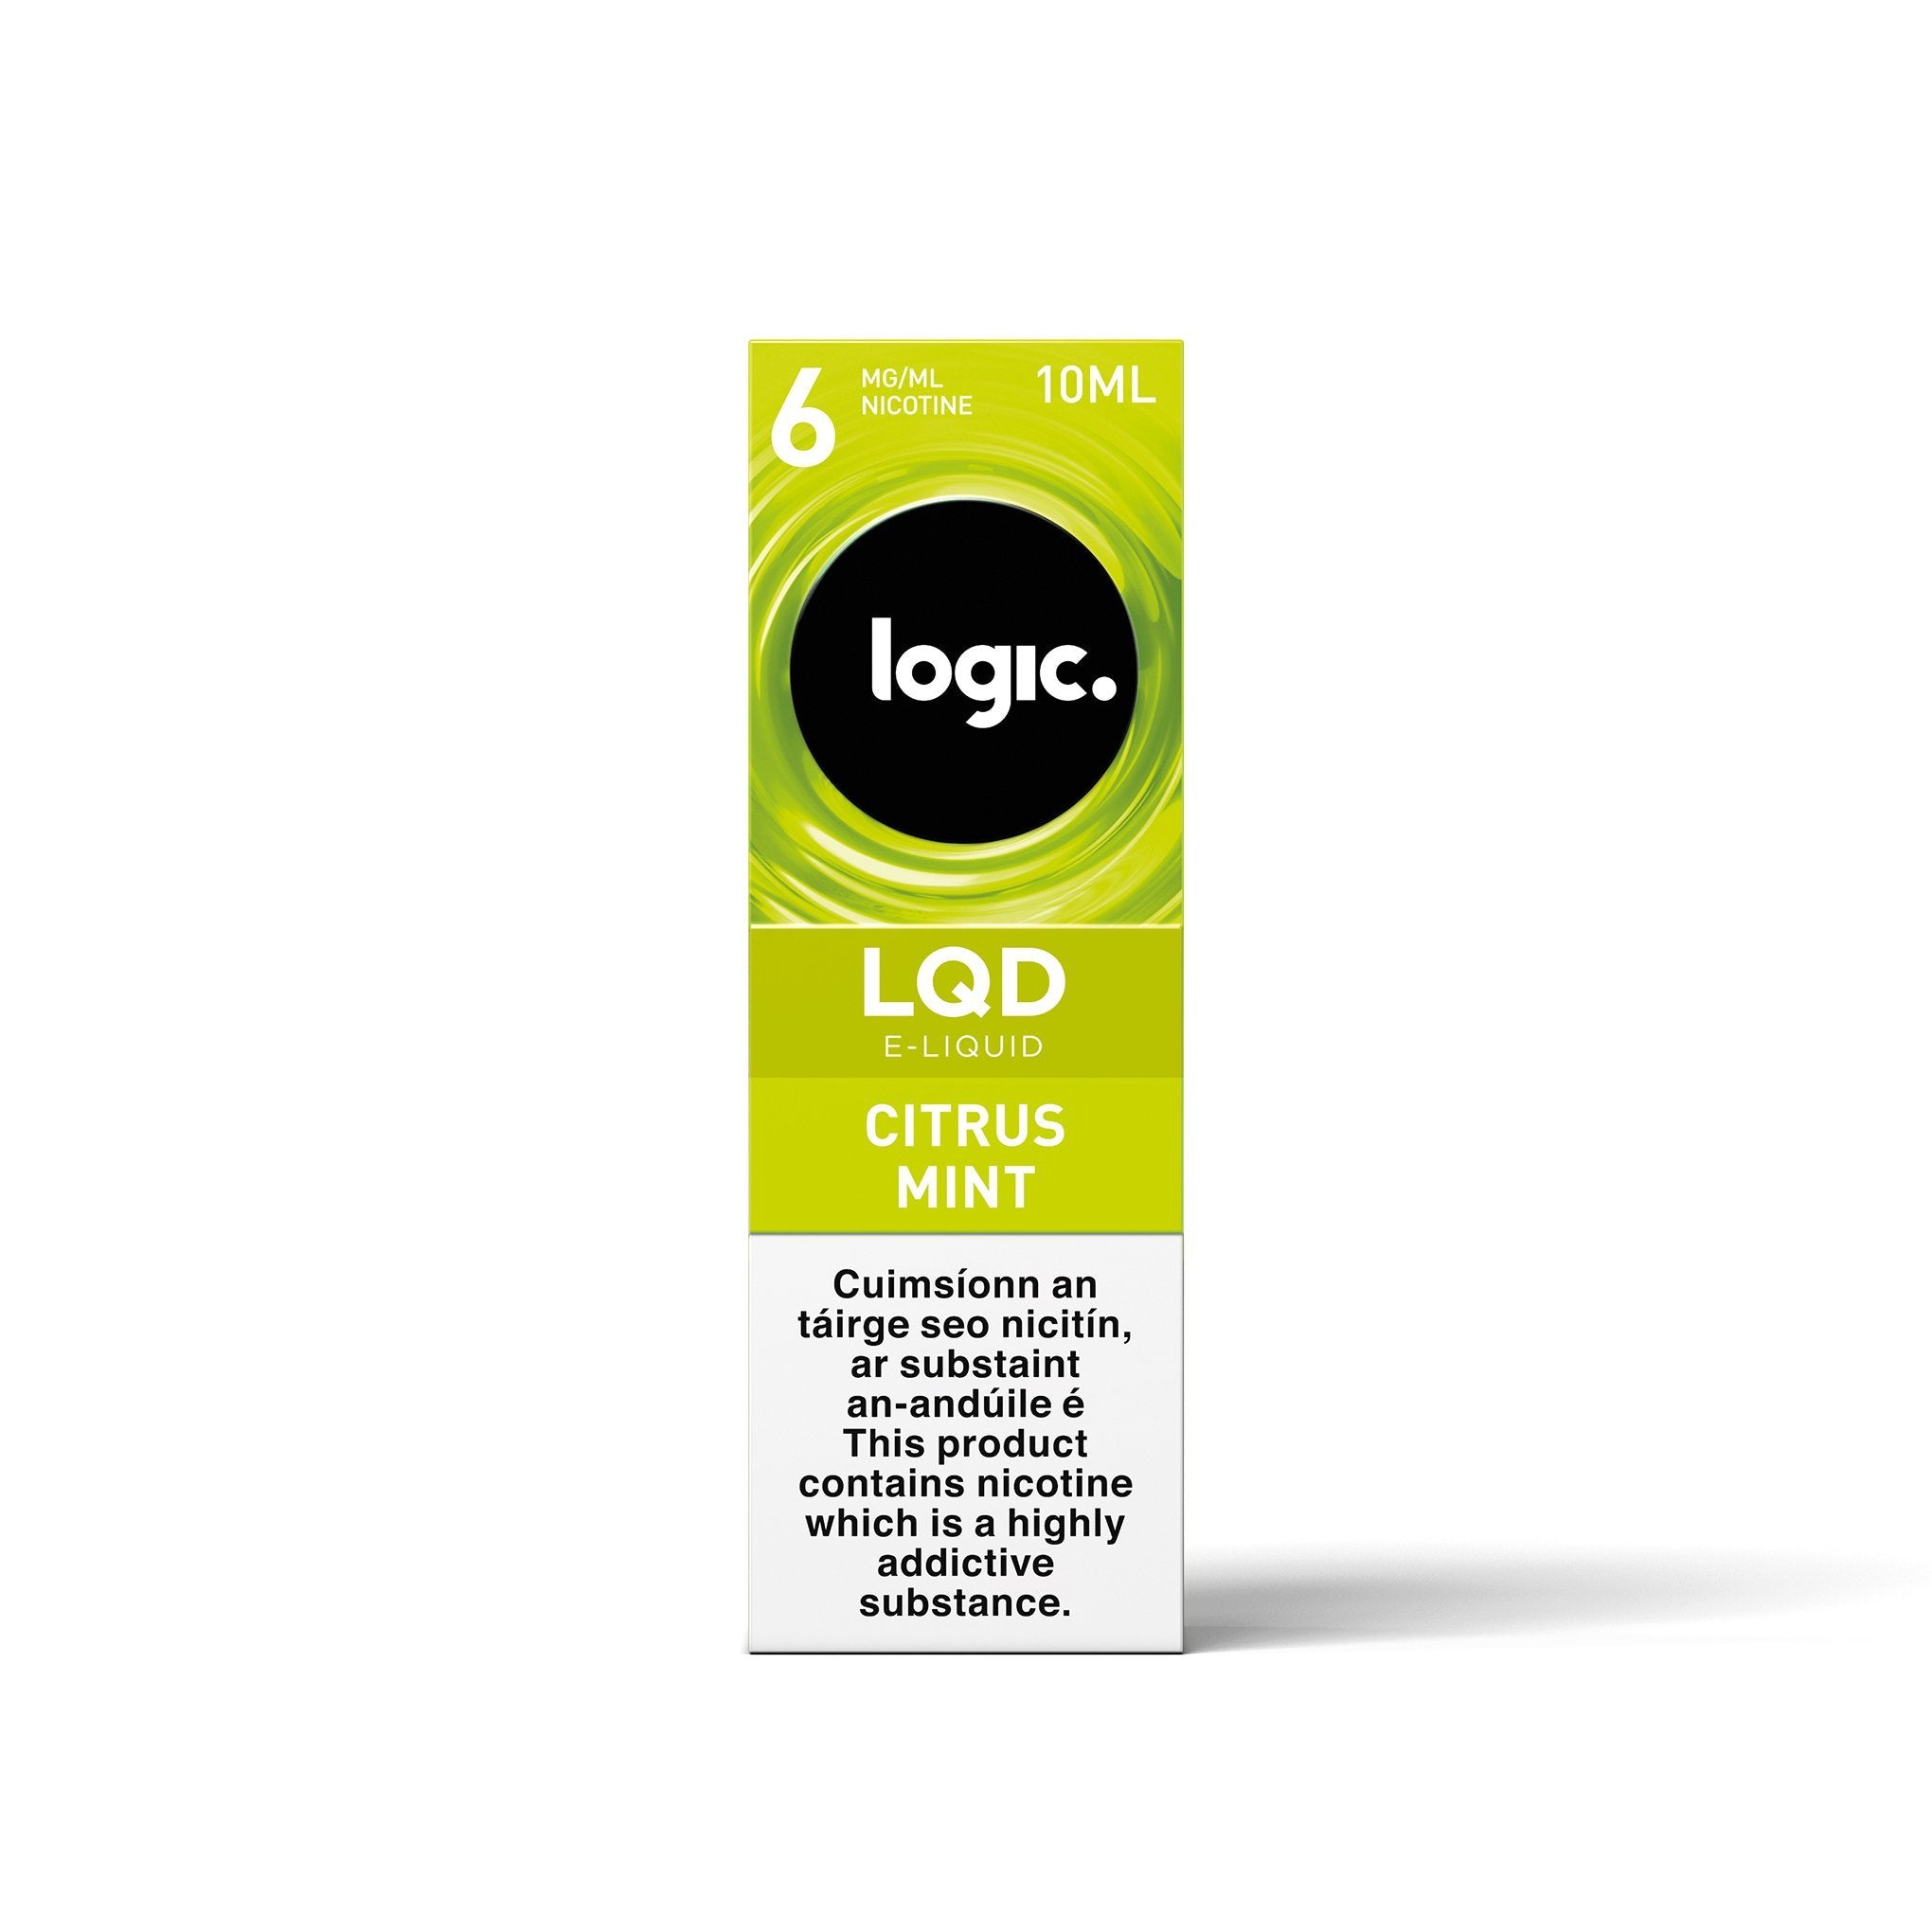 Logic LQD E-Liquid Citrus Mint 6MG- Low Nicotine